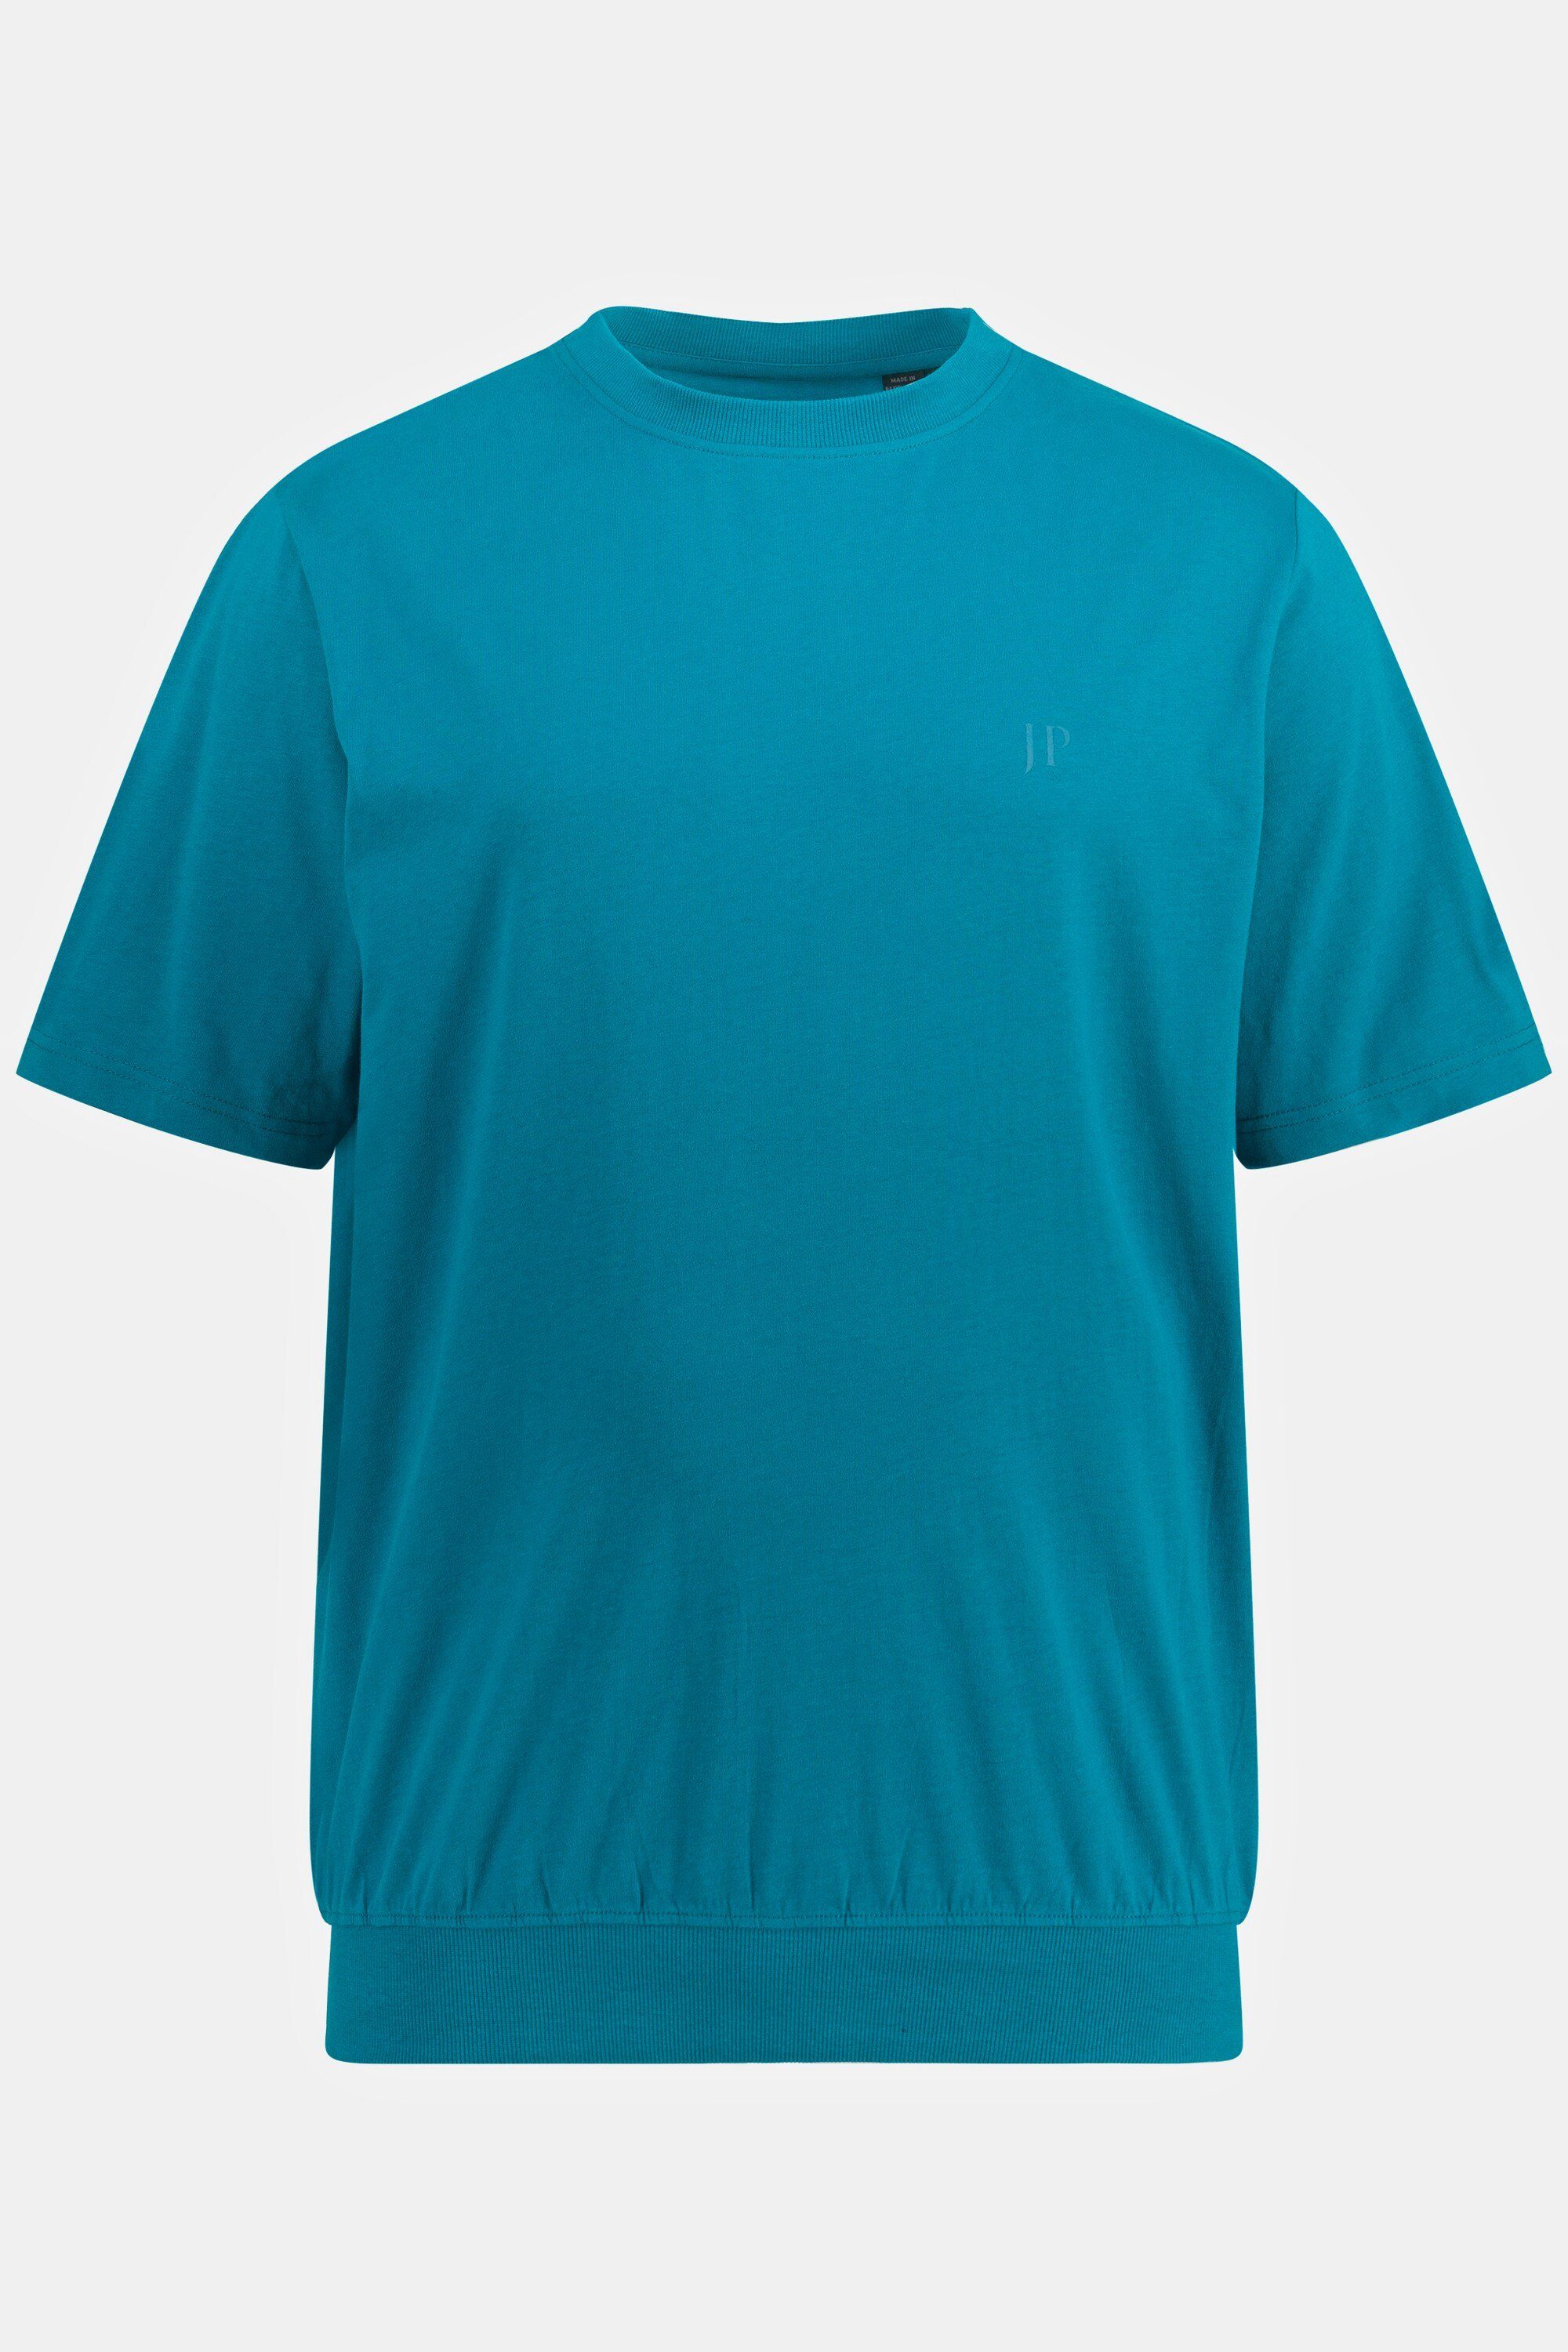 ozeanblau Bauchfit T-Shirt Halbarm Basic JP1880 10XL T-Shirt XXL bis